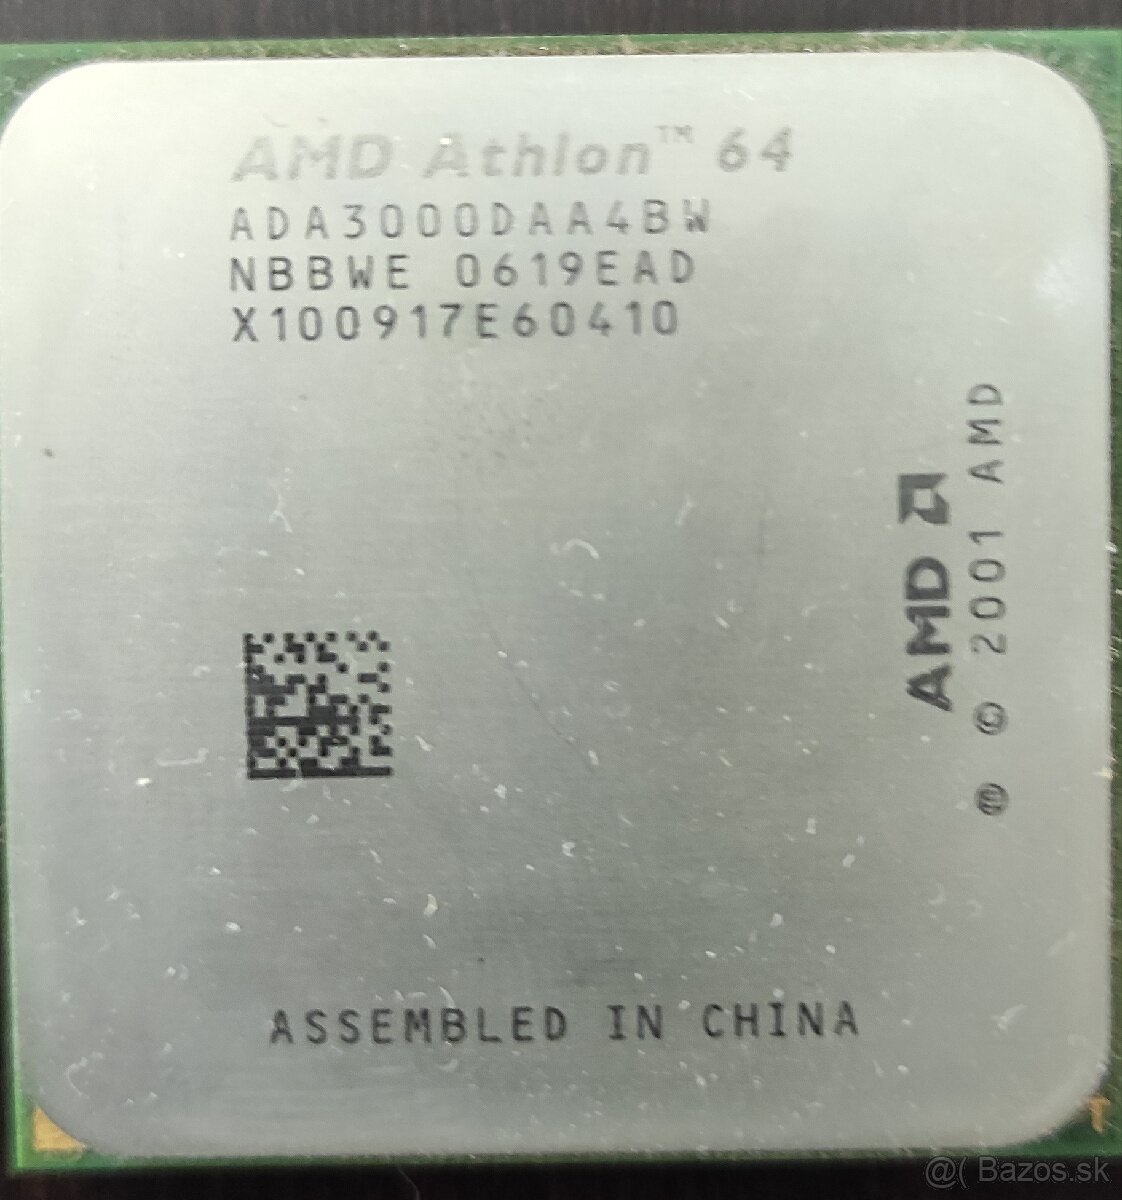 Procesor AMD Athlon ADA3000DAA4BW